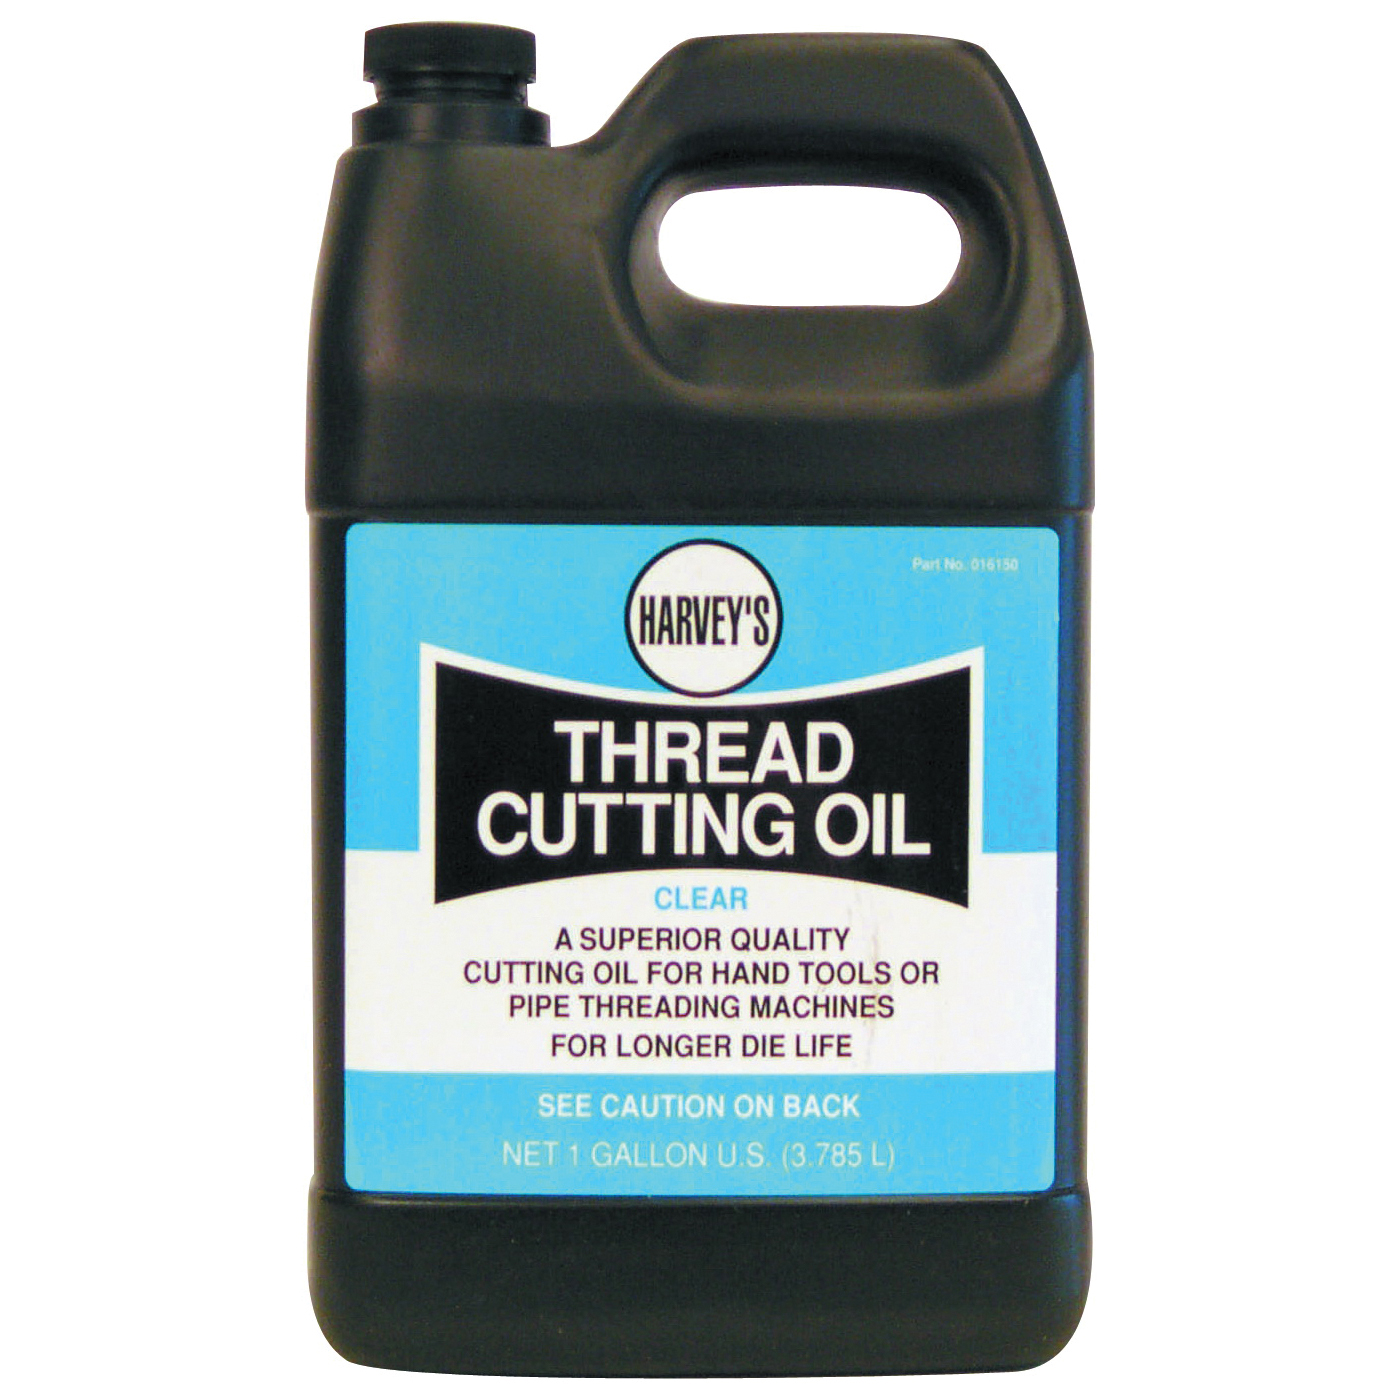 HARVEY 016150 Thread Cutting Oil, 1 gal Jug, Clear - 1